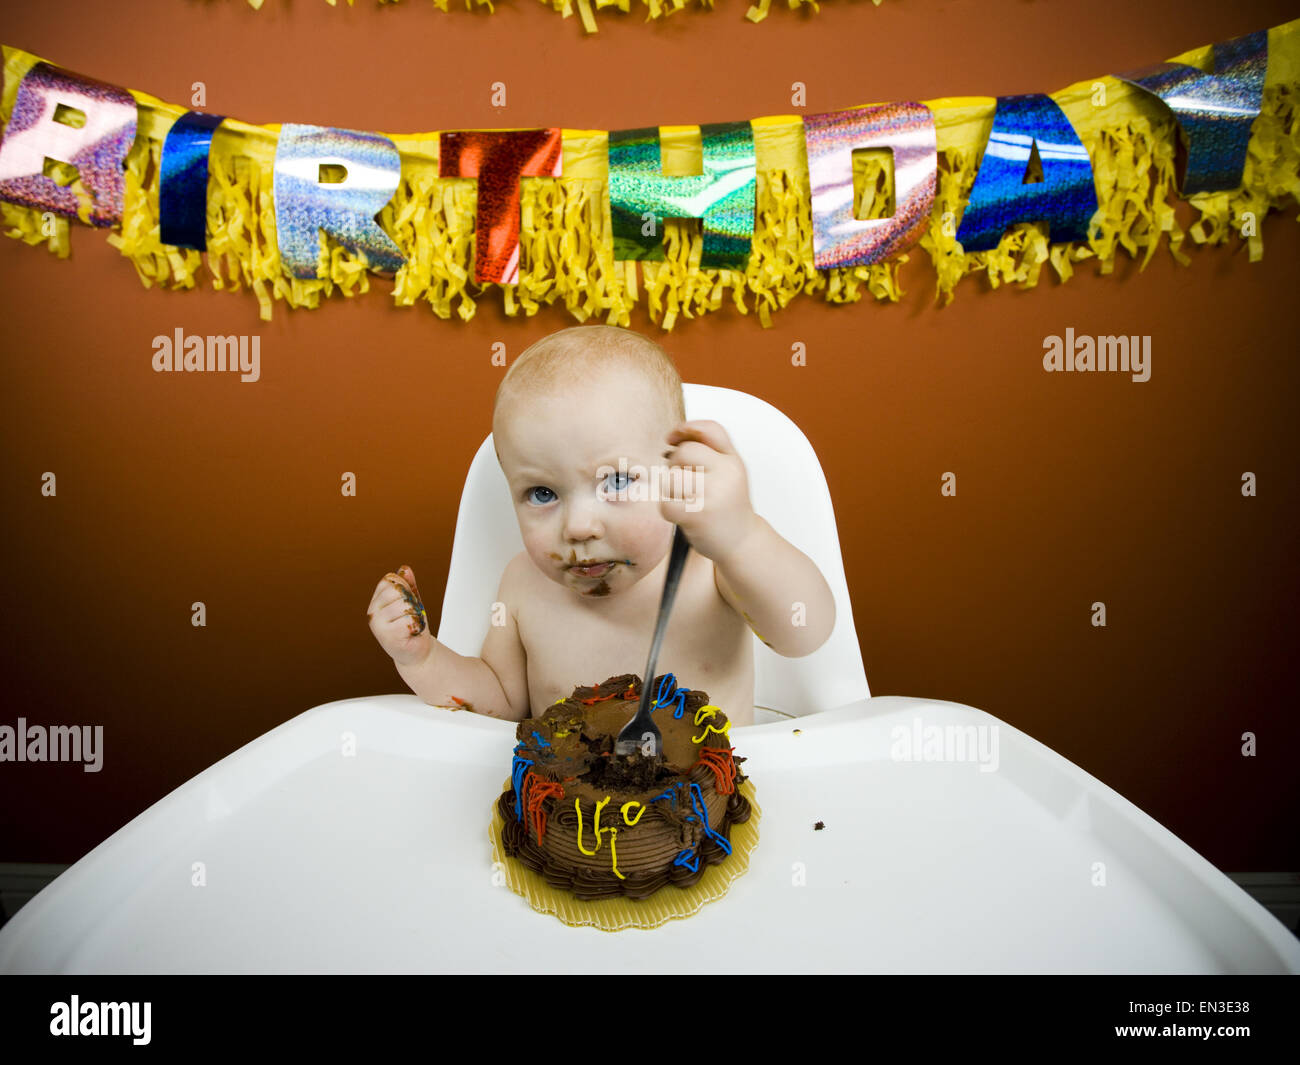 Baby eating birthday cake Stock Photo